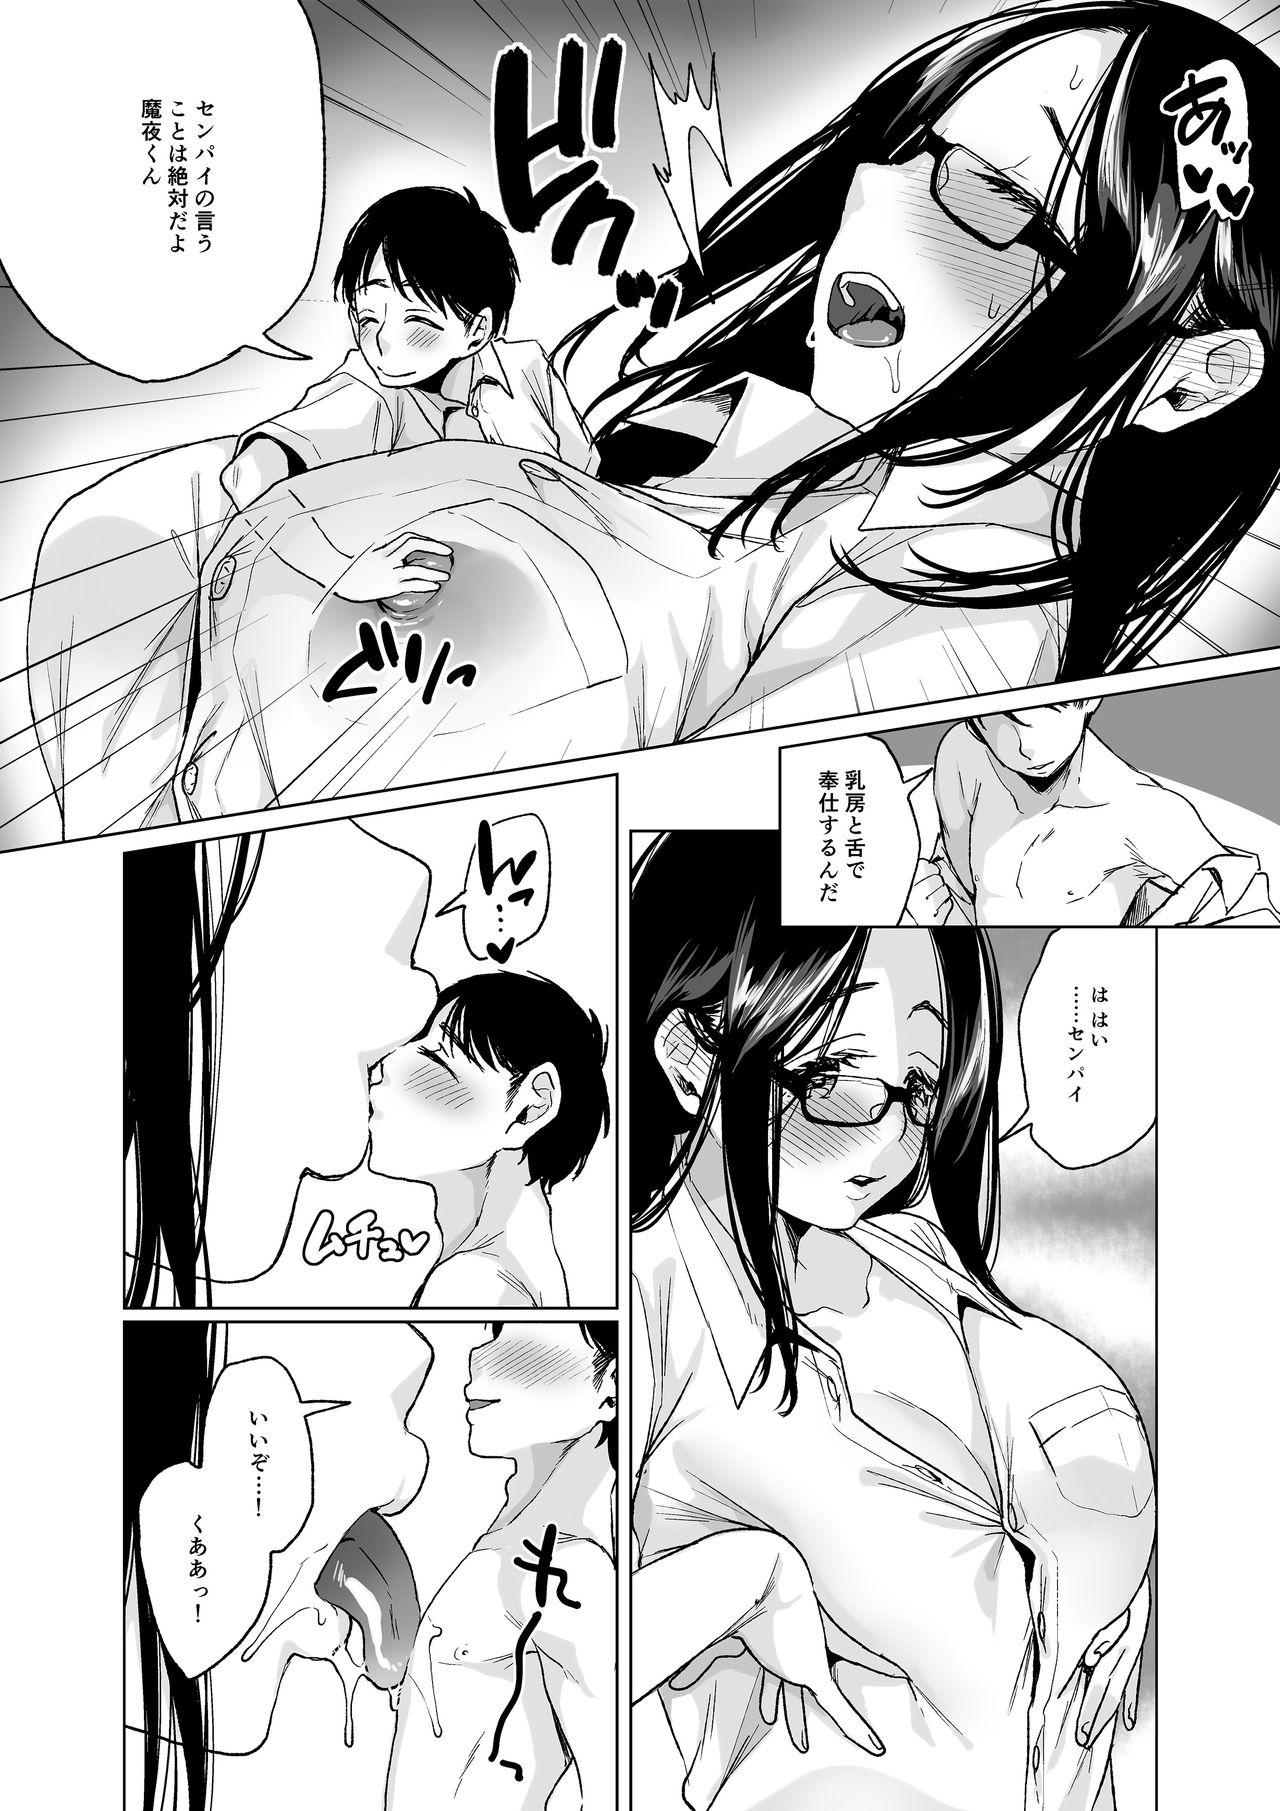 Morena MM Vol. 50 Shumatsu wa Oppai ni Yosete♥ Ameteur Porn - Page 7